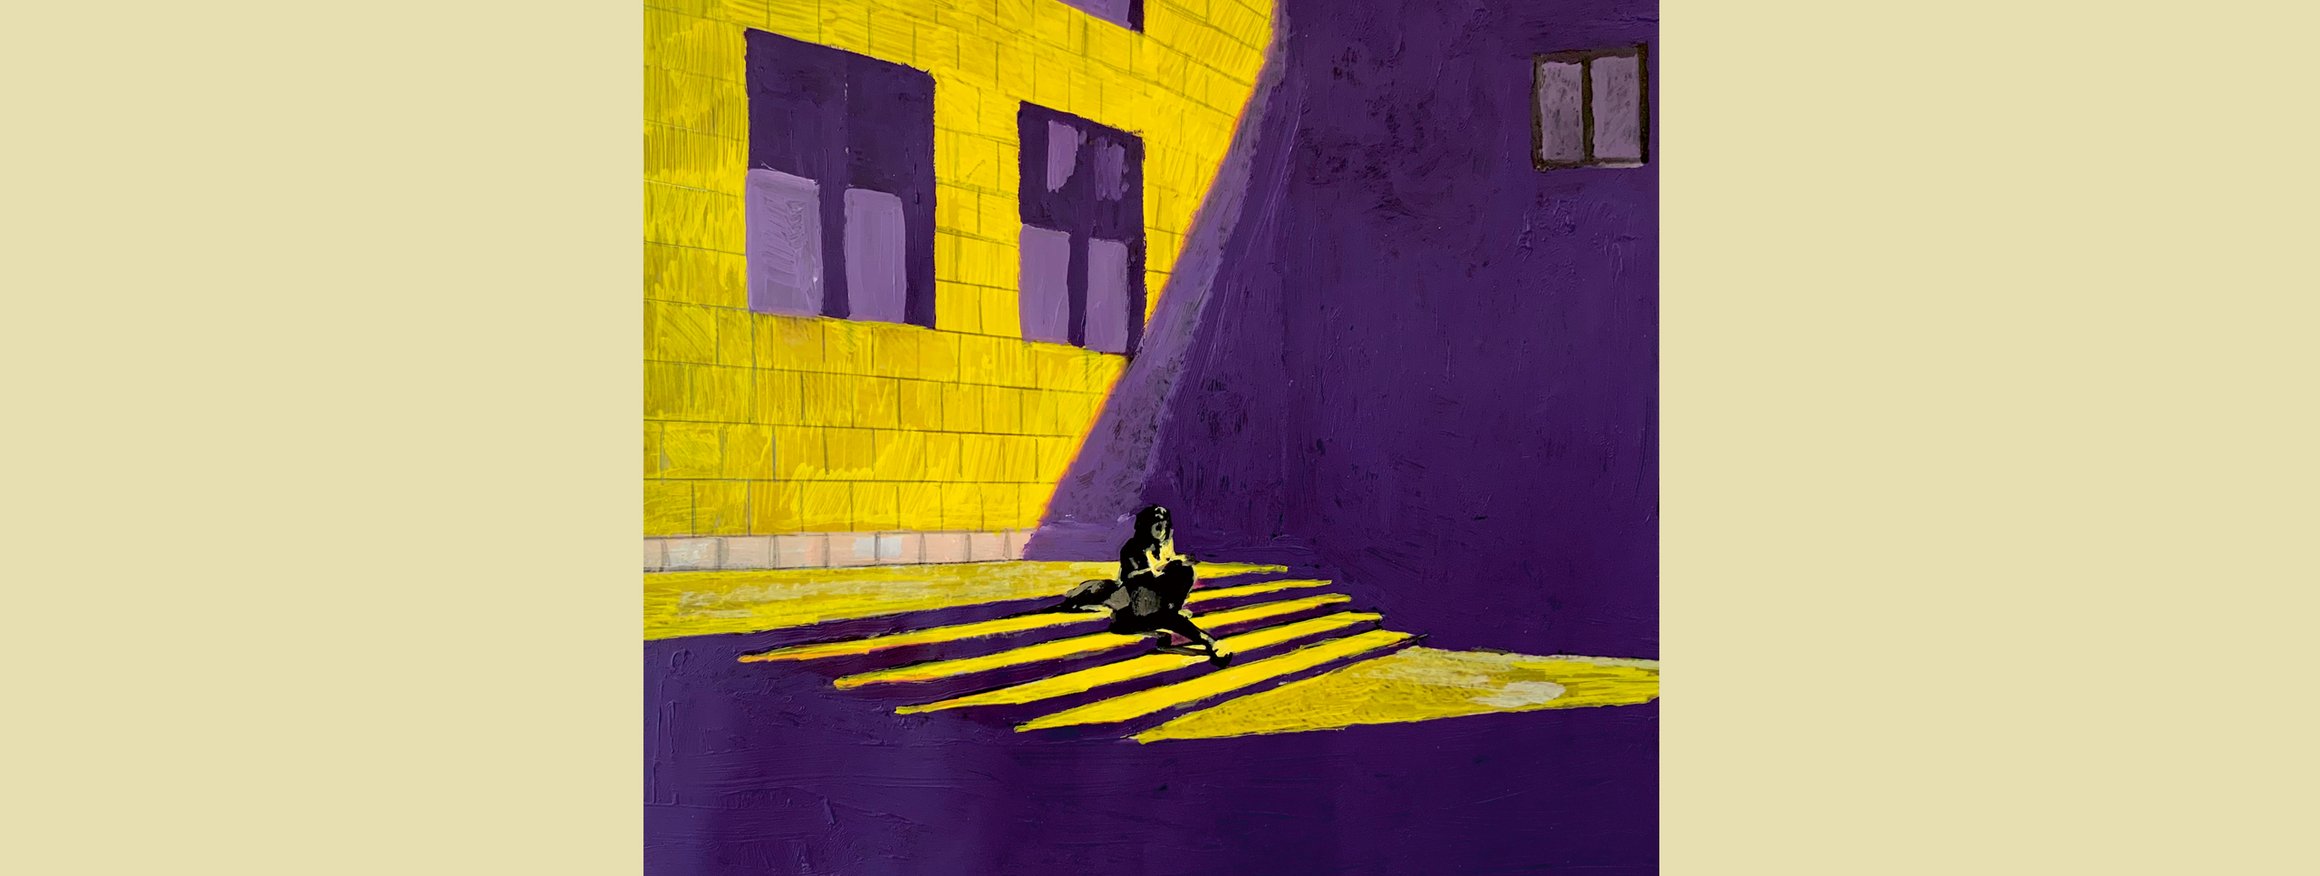 Die Illustration zeigt eine Person auf einer Treppe sitzend vor einer großen Häuserfassade